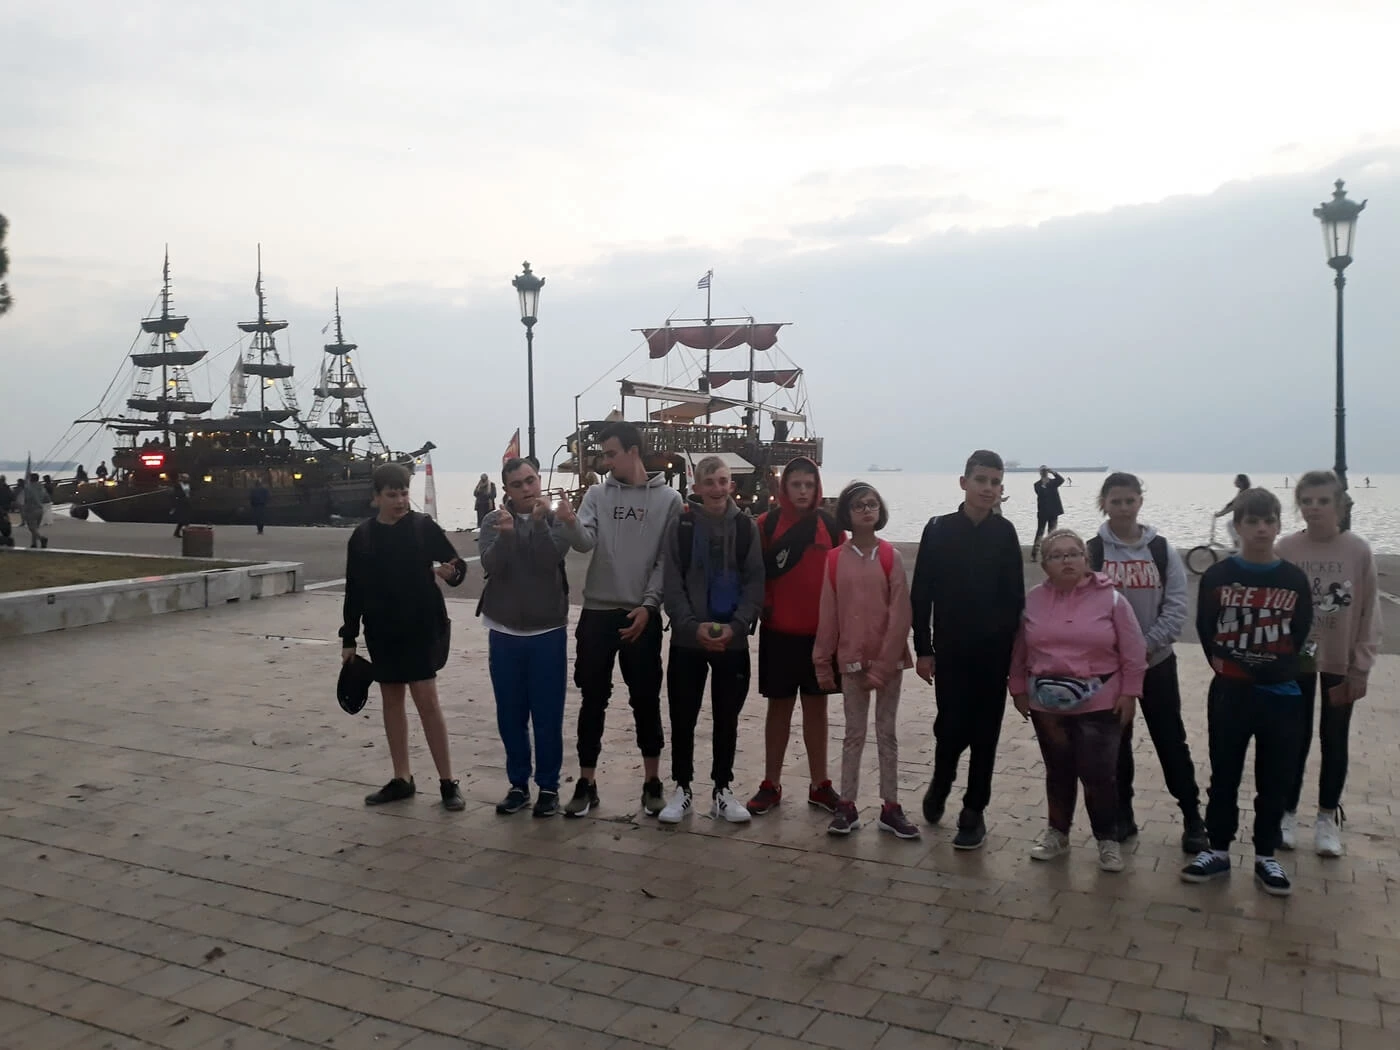 Grupa mlodziezy stoi na wybrzezu Morza Egejskiego. W tle widać statek.